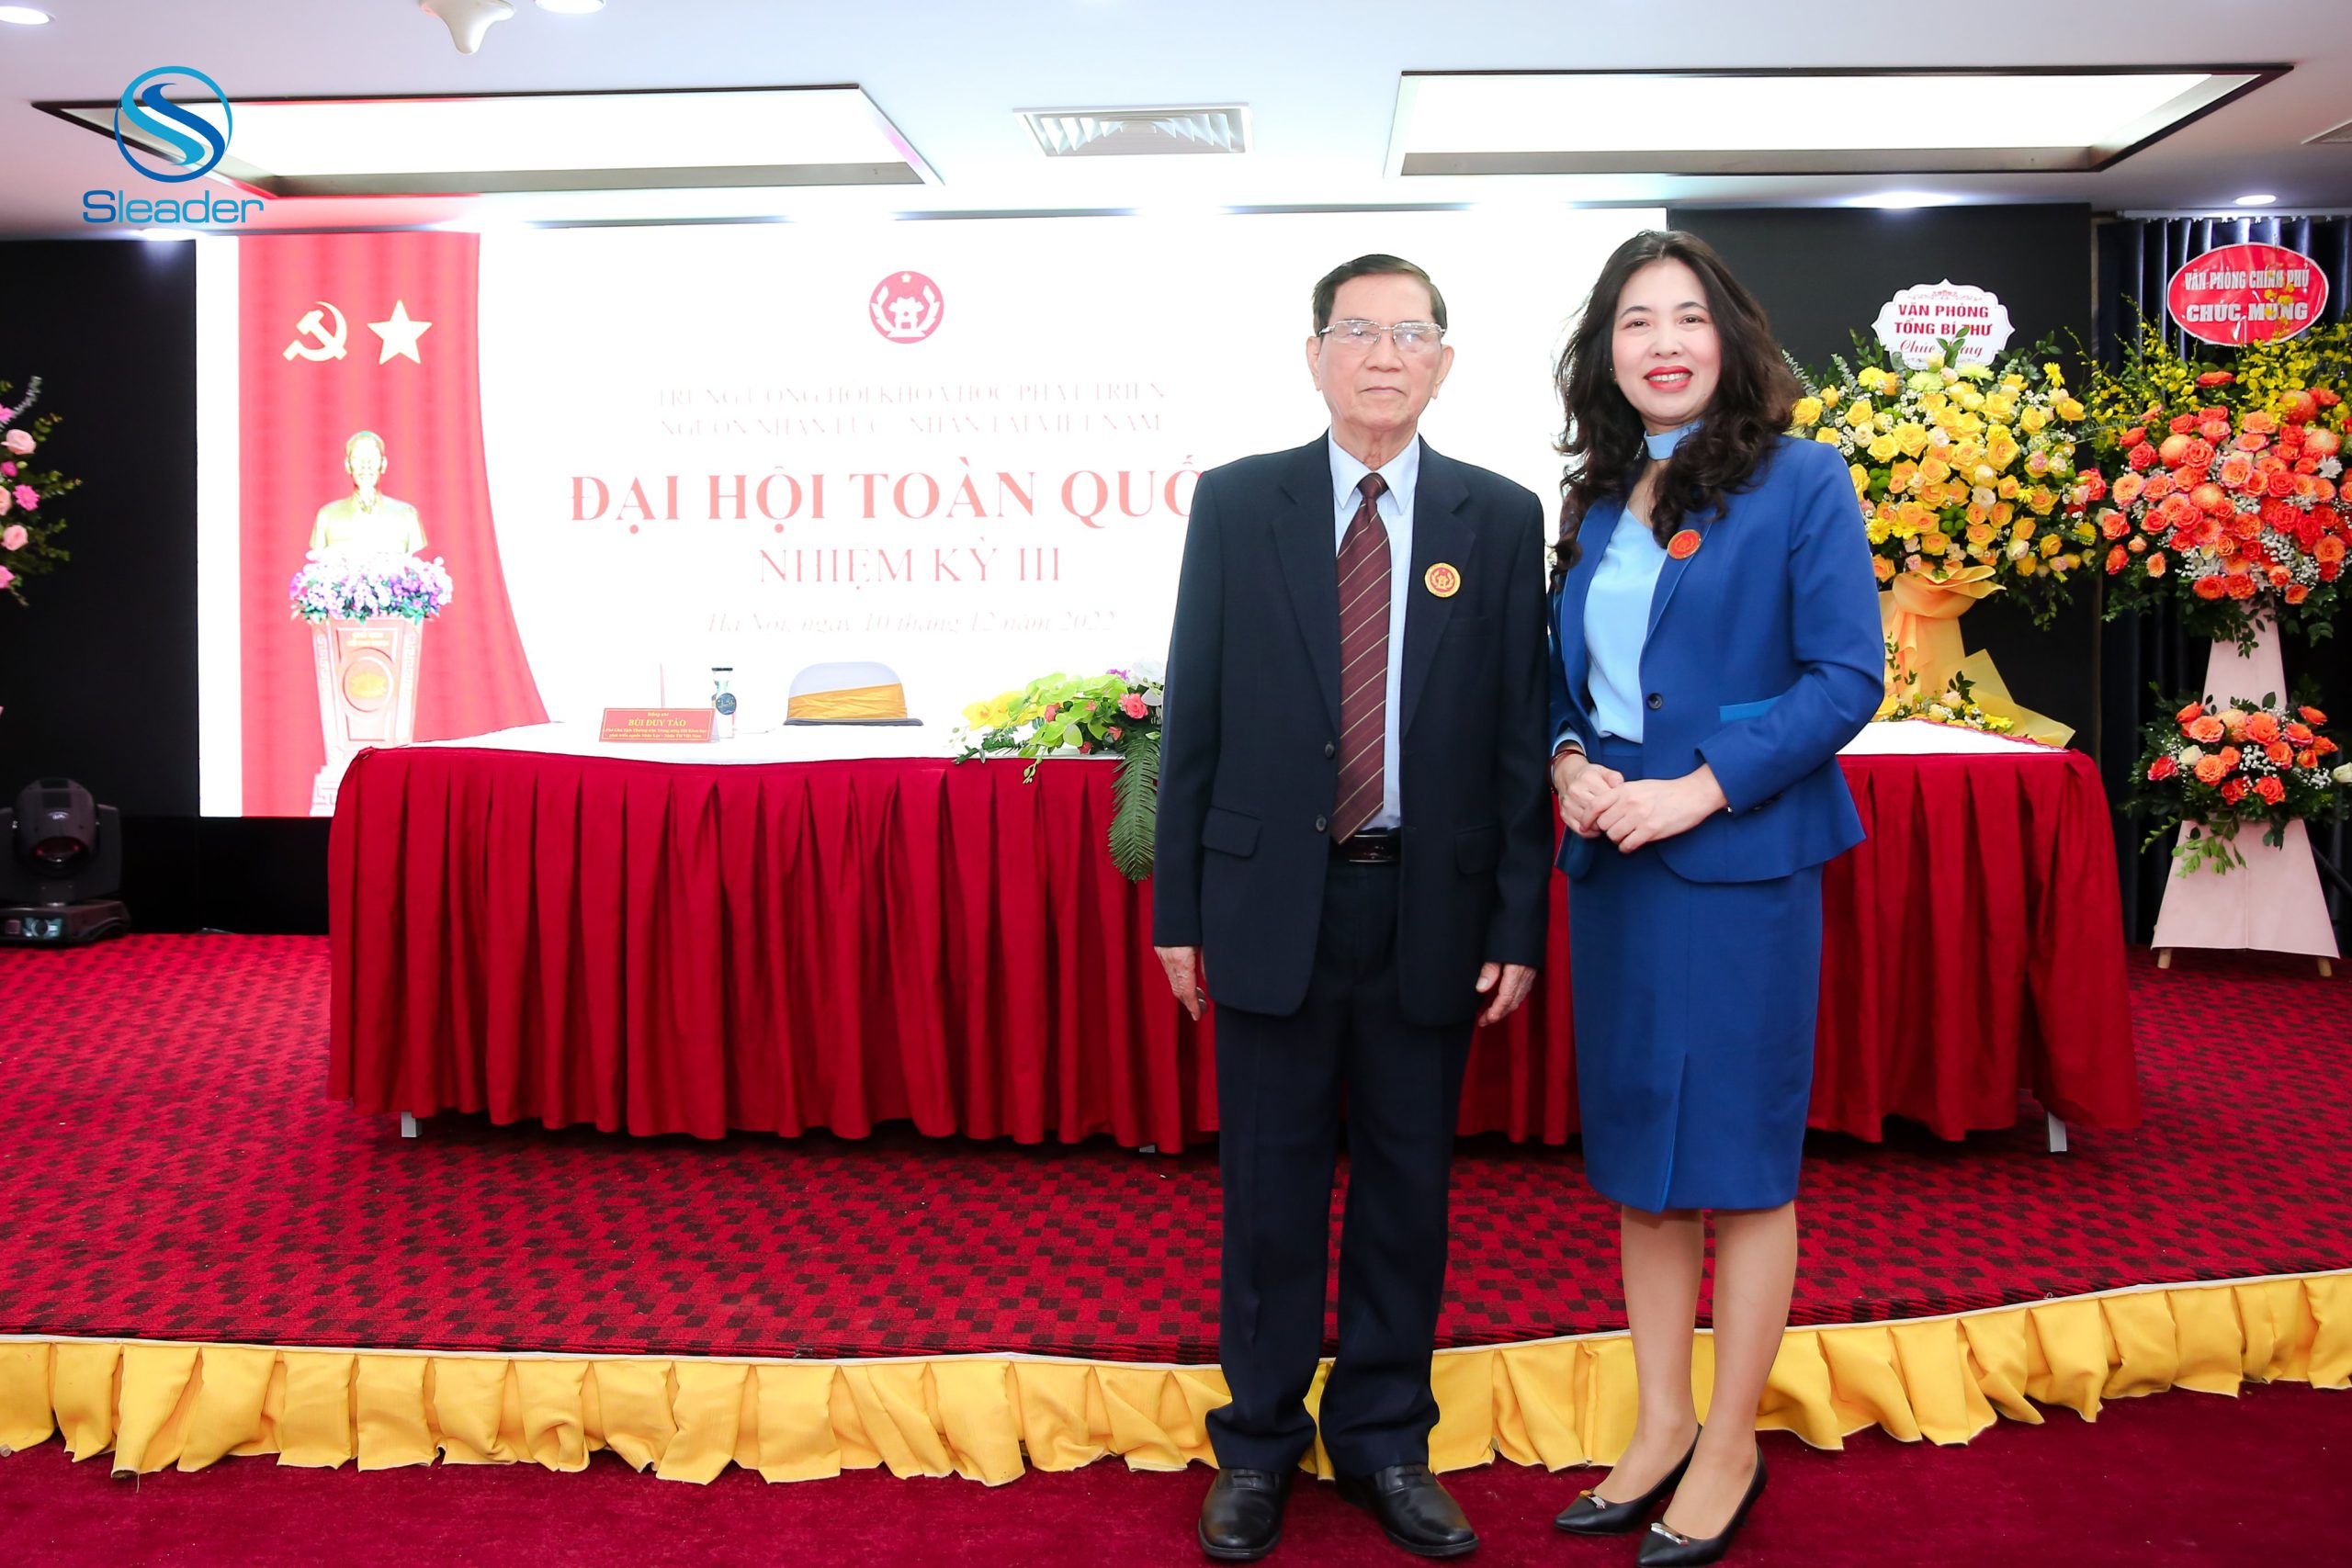 TS. Dương Thu, Viện trưởng Viện Lãnh đạo Chiến lược (Sleader) cùng Ông Bùi Duy Tảo, Phó Chủ tịch thường trực Trung ương Hội